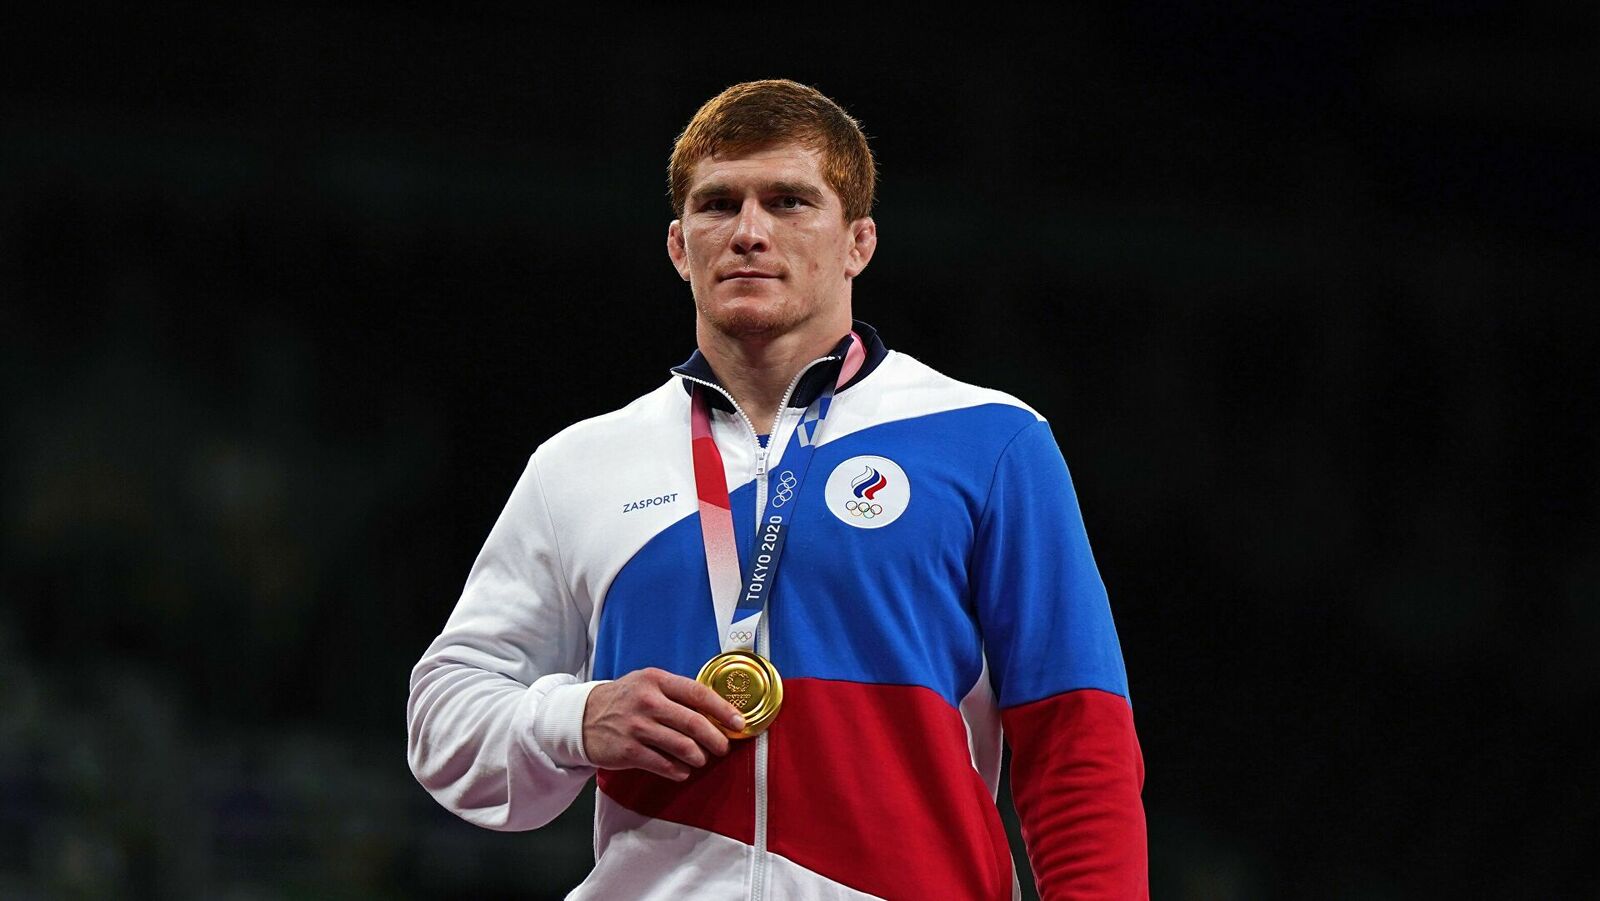 Путин поздравил Евлоева с золотом Олимпиады в соревнованиях по греко-римской борьбе